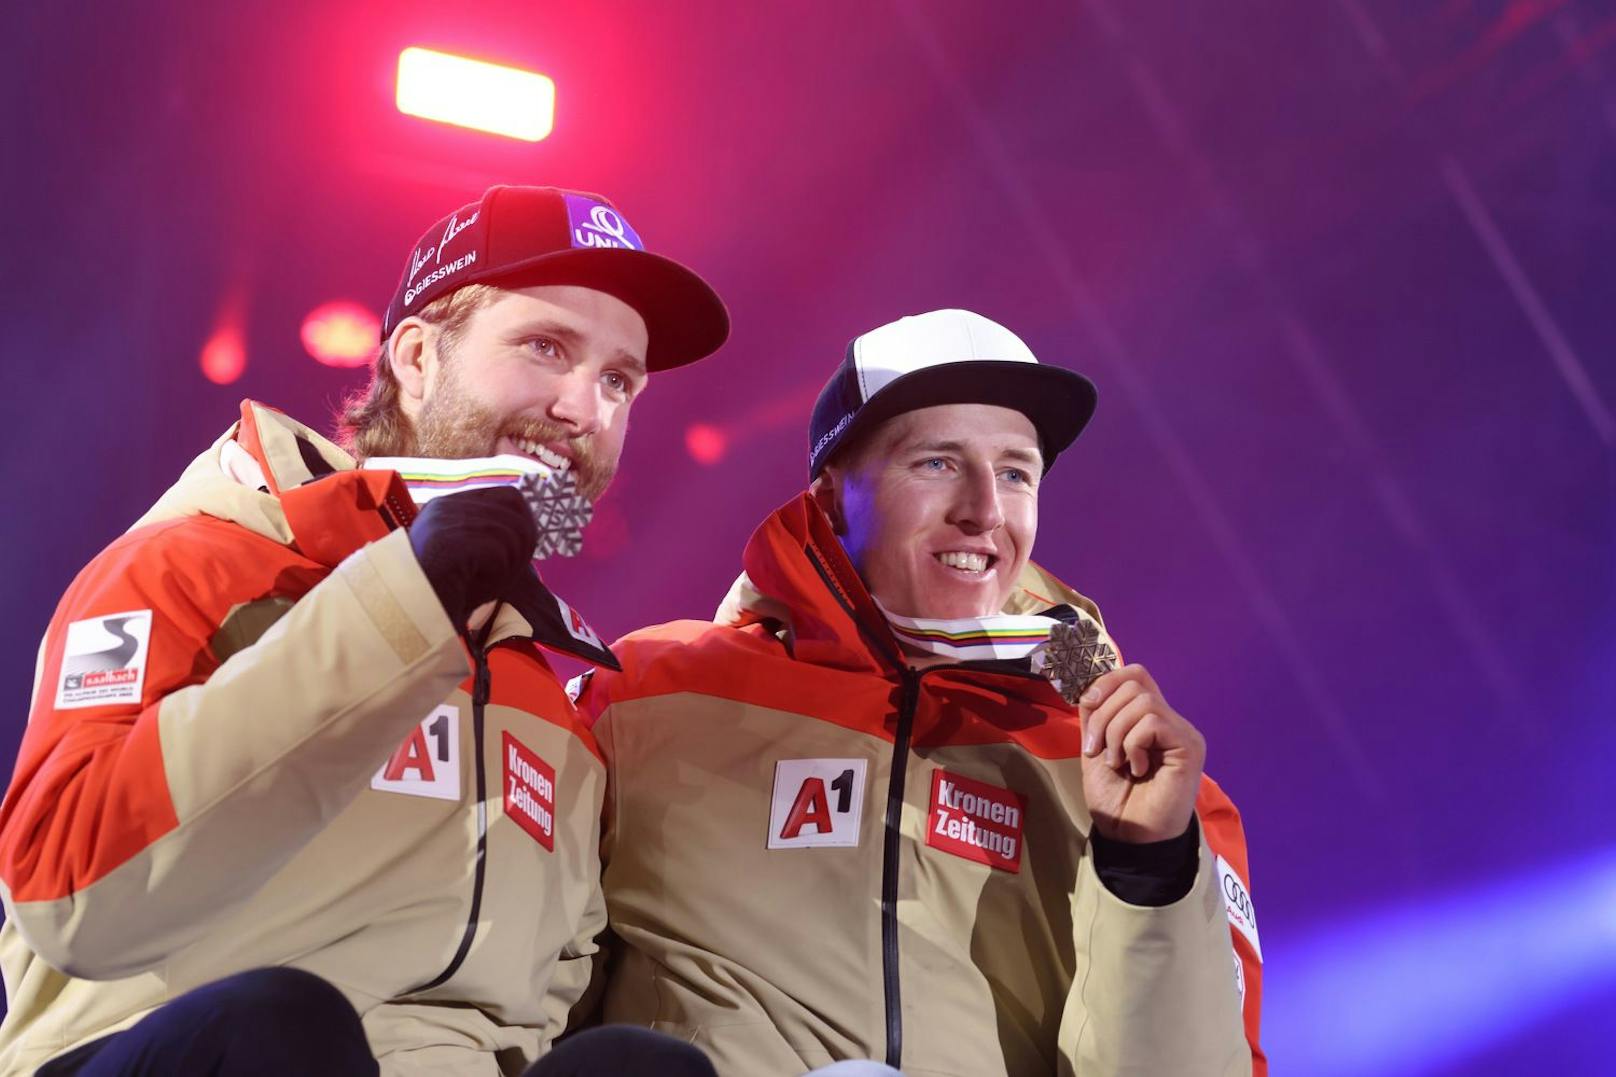 Die ÖSV-Stars Marco Schwarz und Raphael Haaser jubeln bei der Ski-WM in Courchevel über Silber und Bronze in der Kombi.